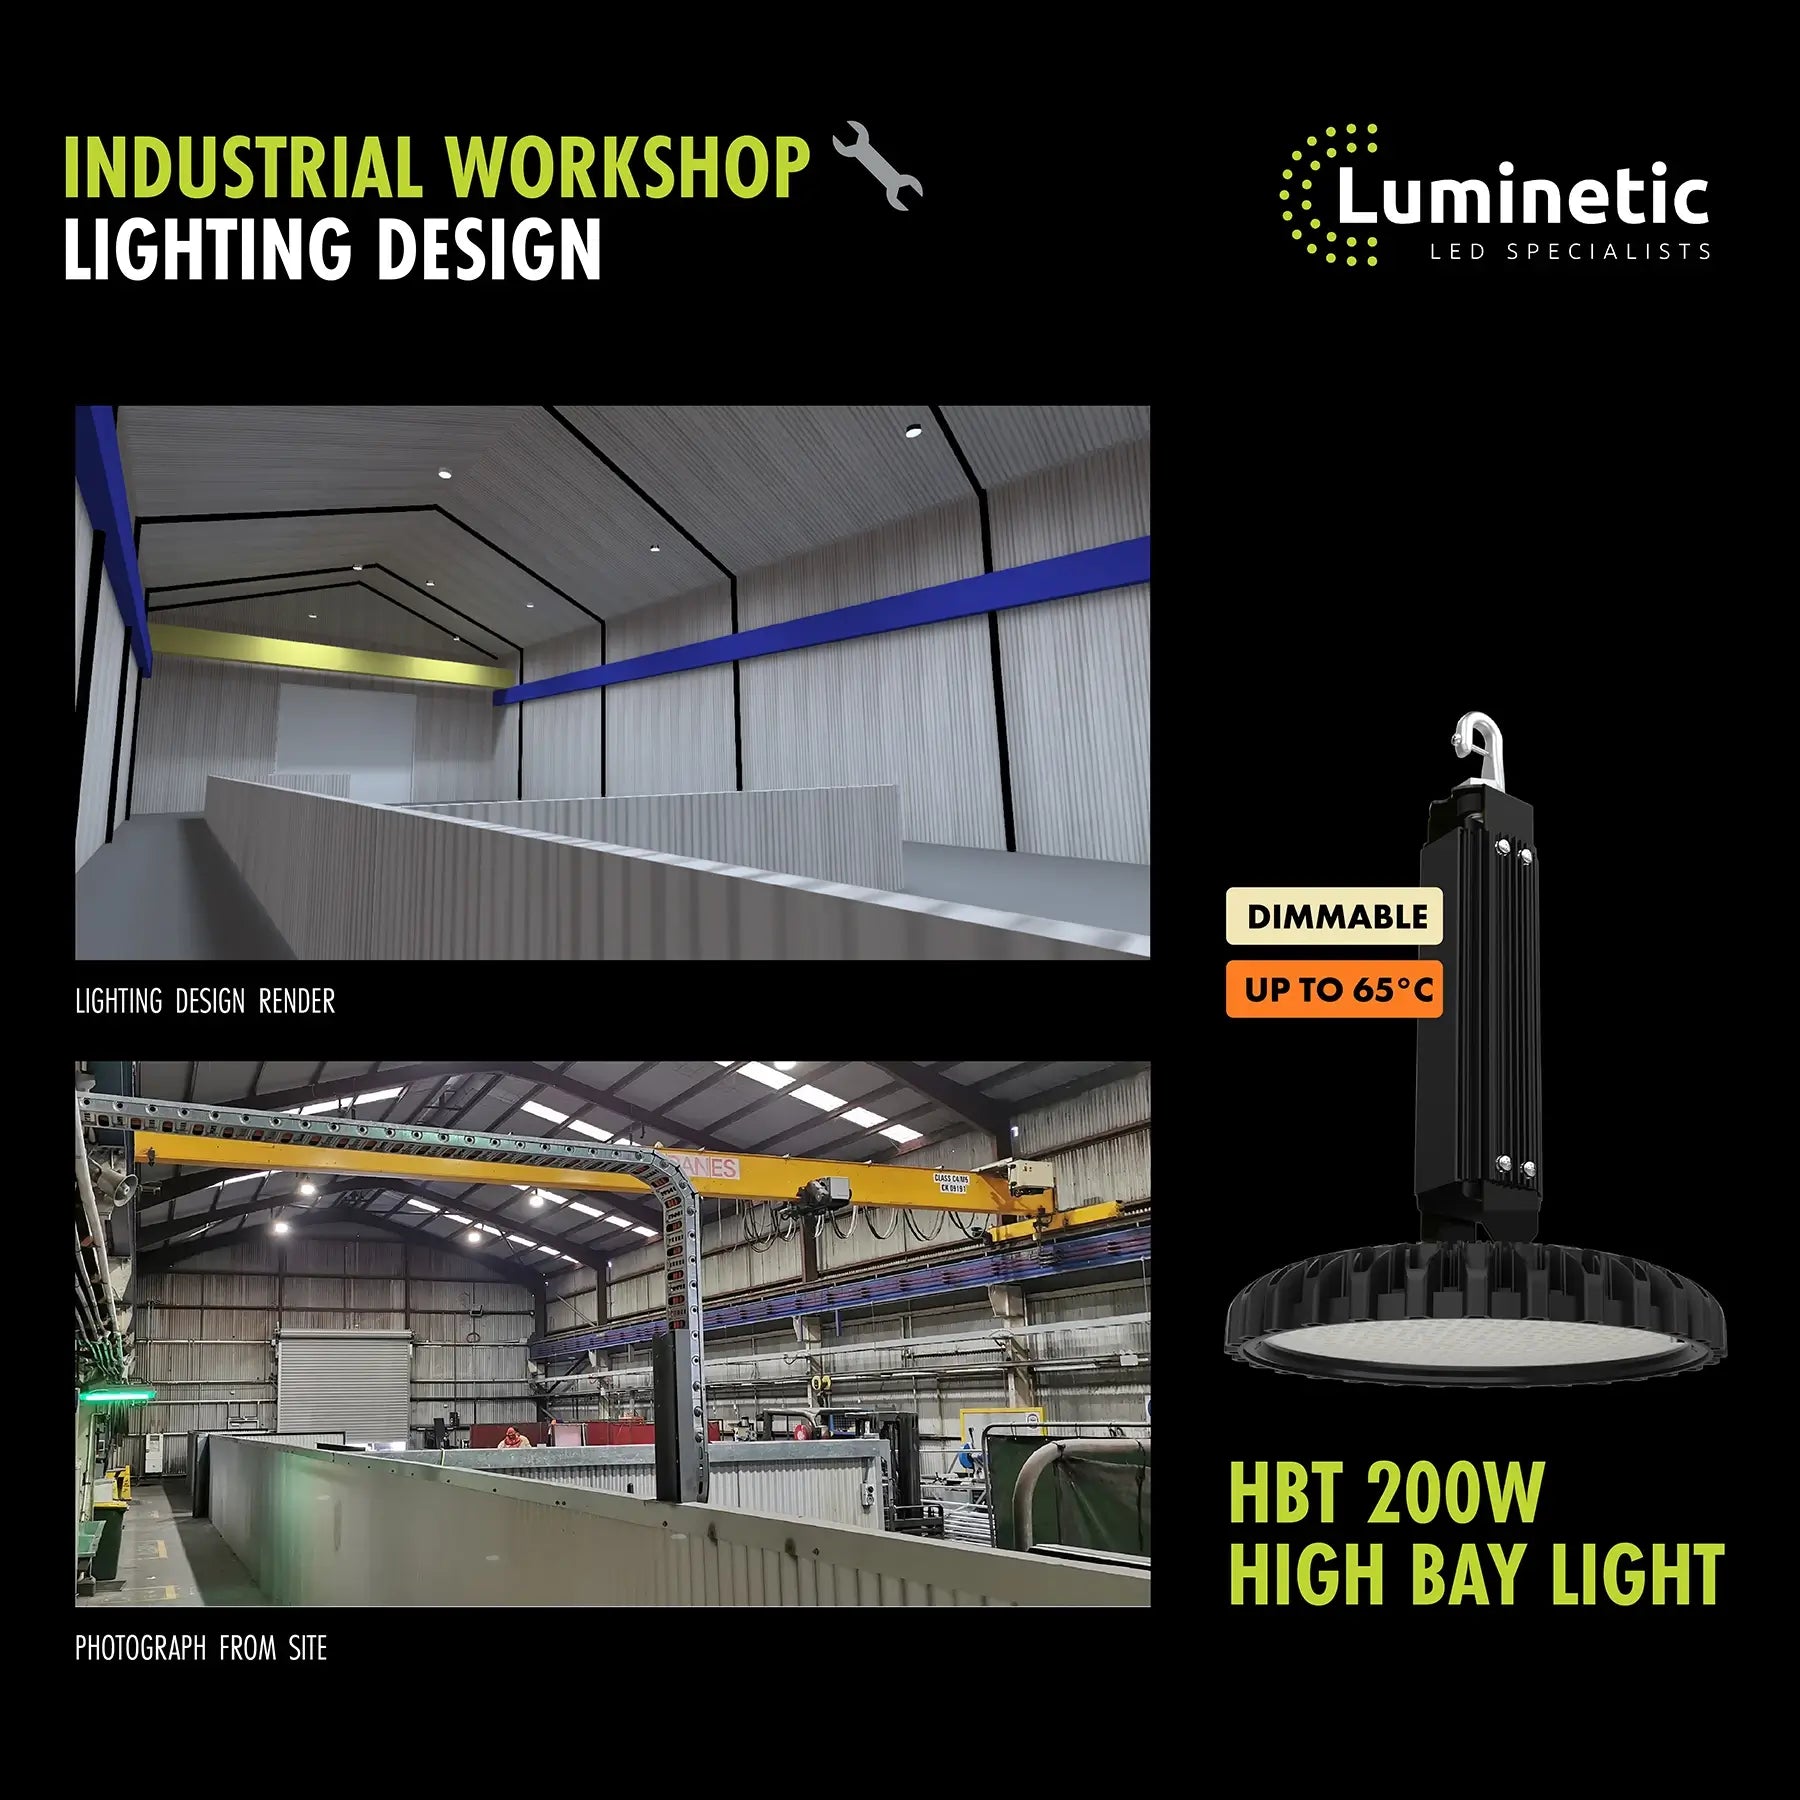 Lighting design for industrial workshop